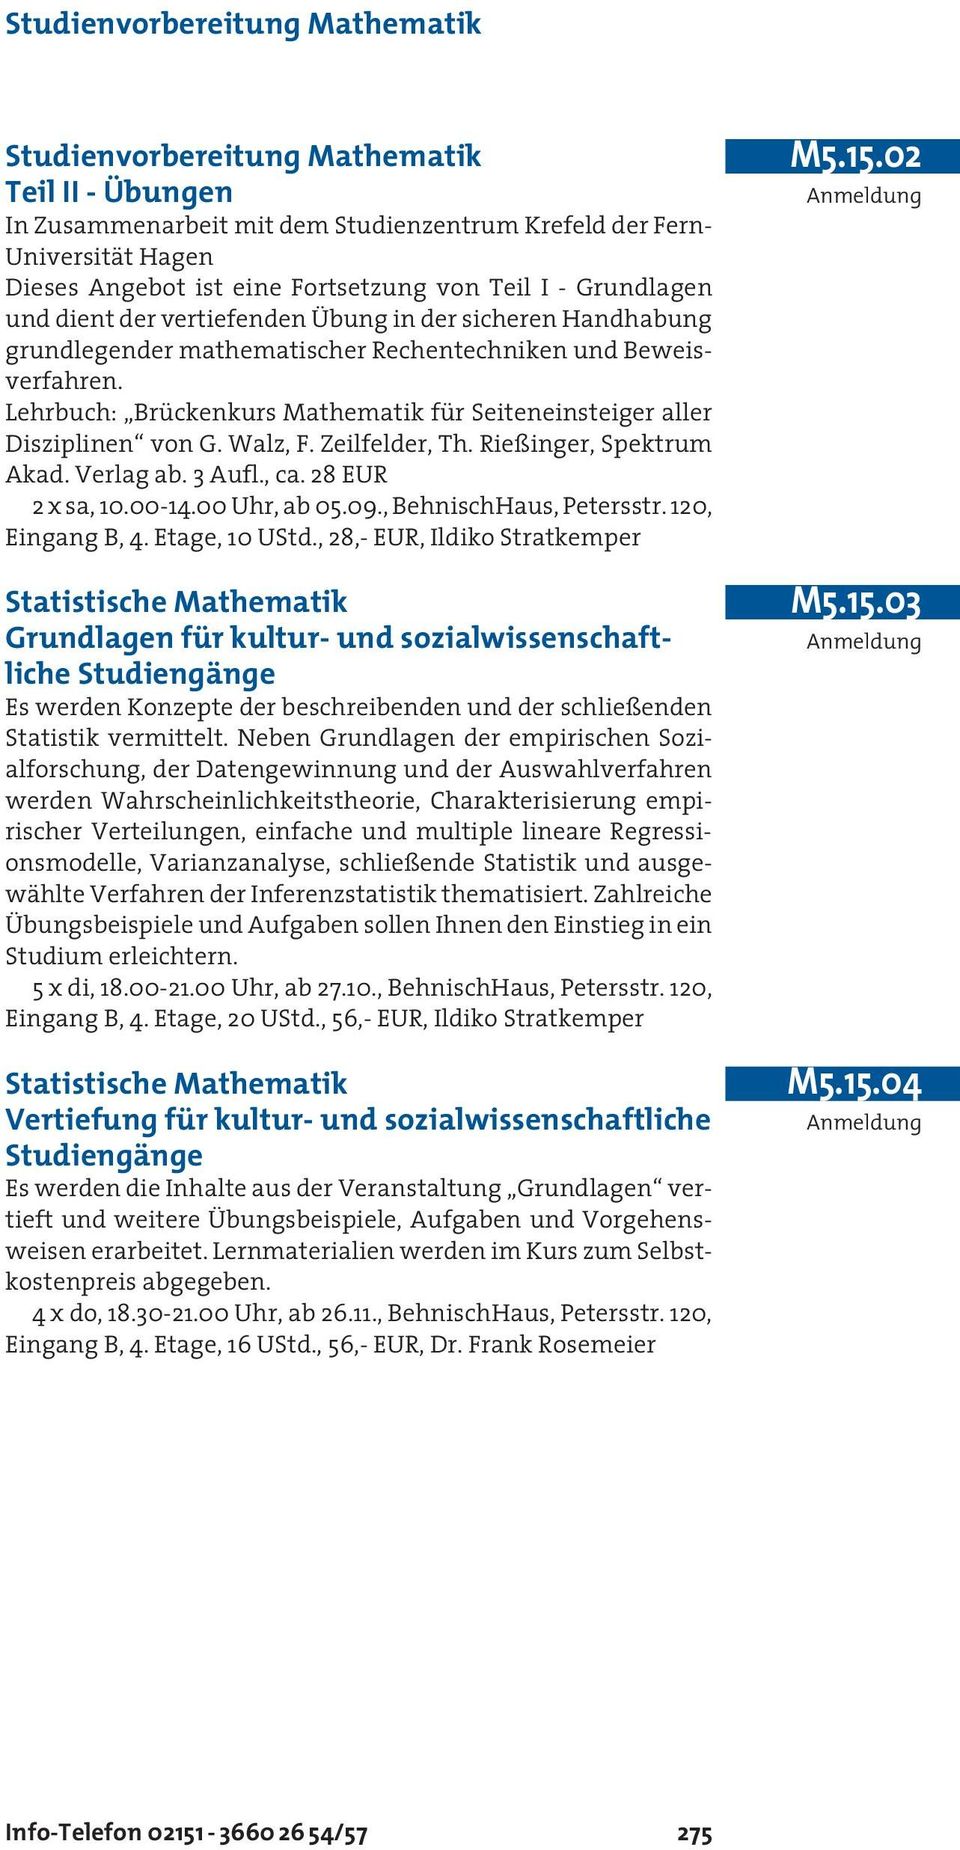 Lehrbuch: Brückenkurs Mathematik für Seiteneinsteiger aller Disziplinen von G. Walz, F. Zeilfelder, Th. Rießinger, Spektrum Akad. Verlag ab. 3 Aufl., ca. 28 EUR 2 x sa, 10.00-14.00 Uhr, ab 05.09.